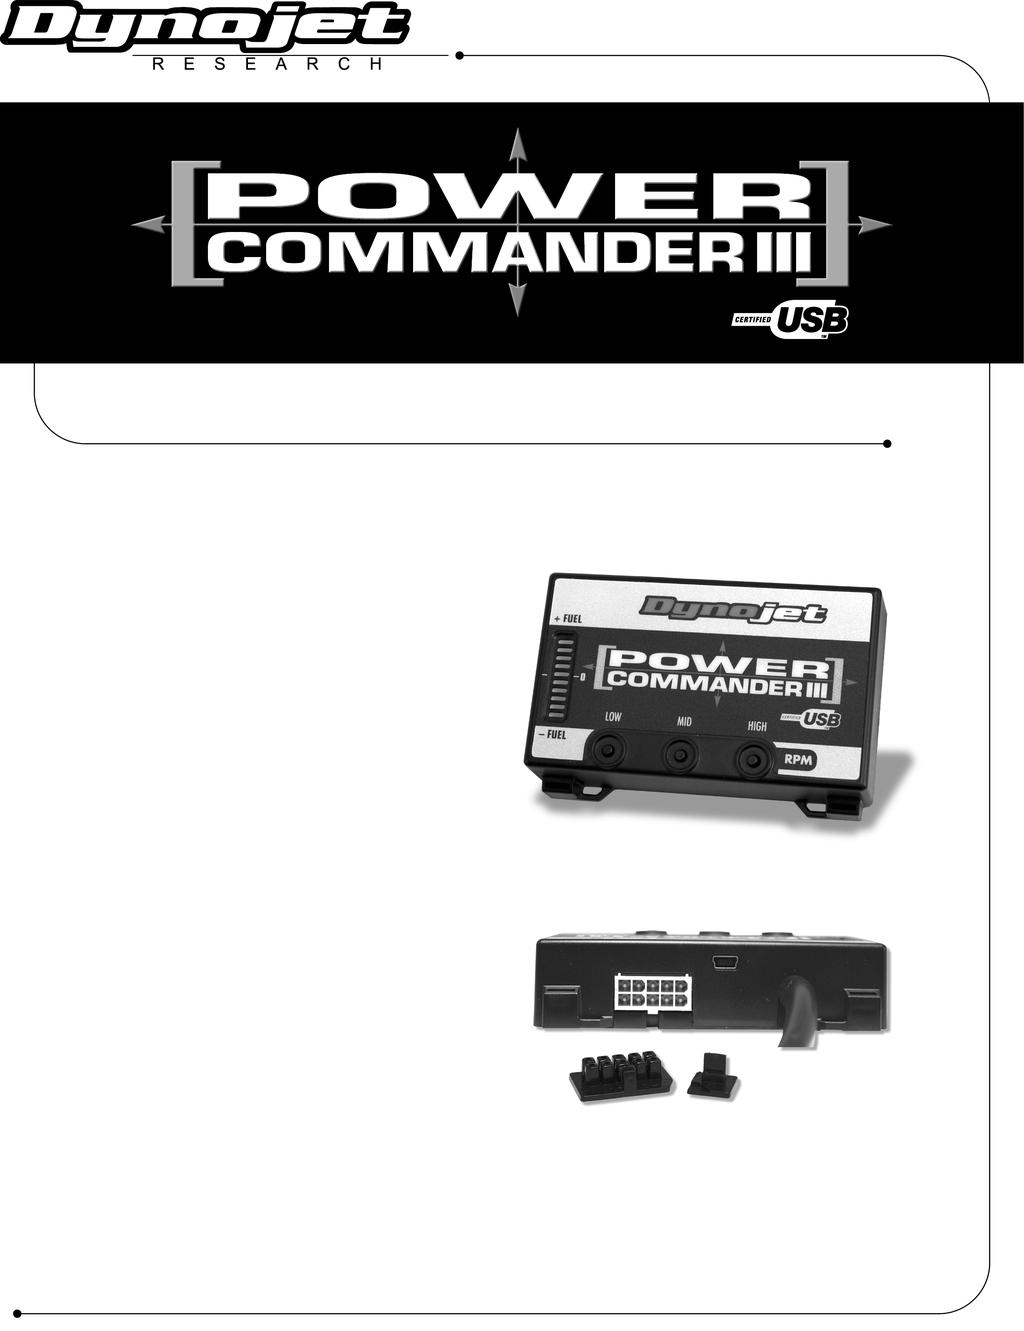 2002-2003 Kawasaki Mean Streak Instrucciones de montaje Lista de Componentes 1 Power Commander 1 Cable USB 1 CD-ROM 1 Manual de instrucciones 1 Adaptador de corriente 2 Adhesivos Power Commander 2